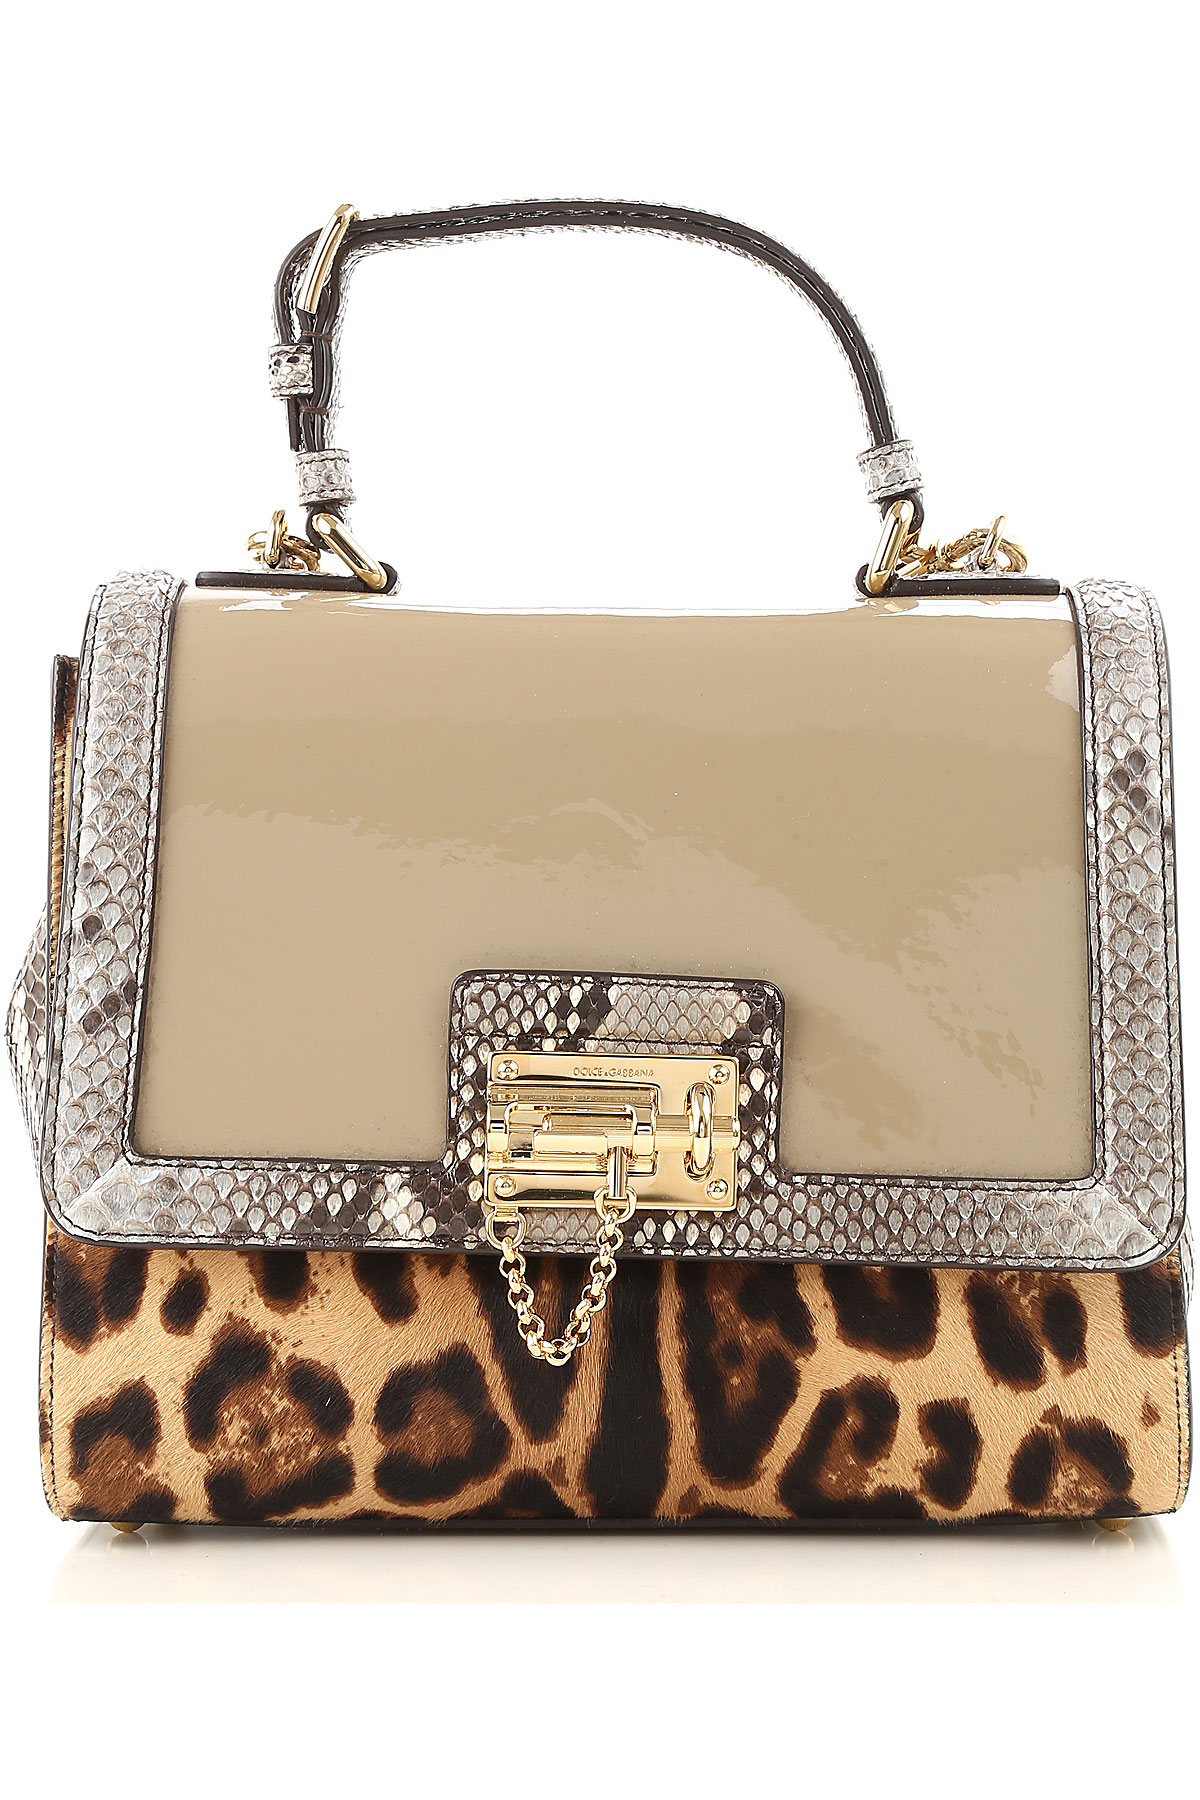 Handbags Dolce & Gabbana, Style code: bb5826-a2e98-5e032